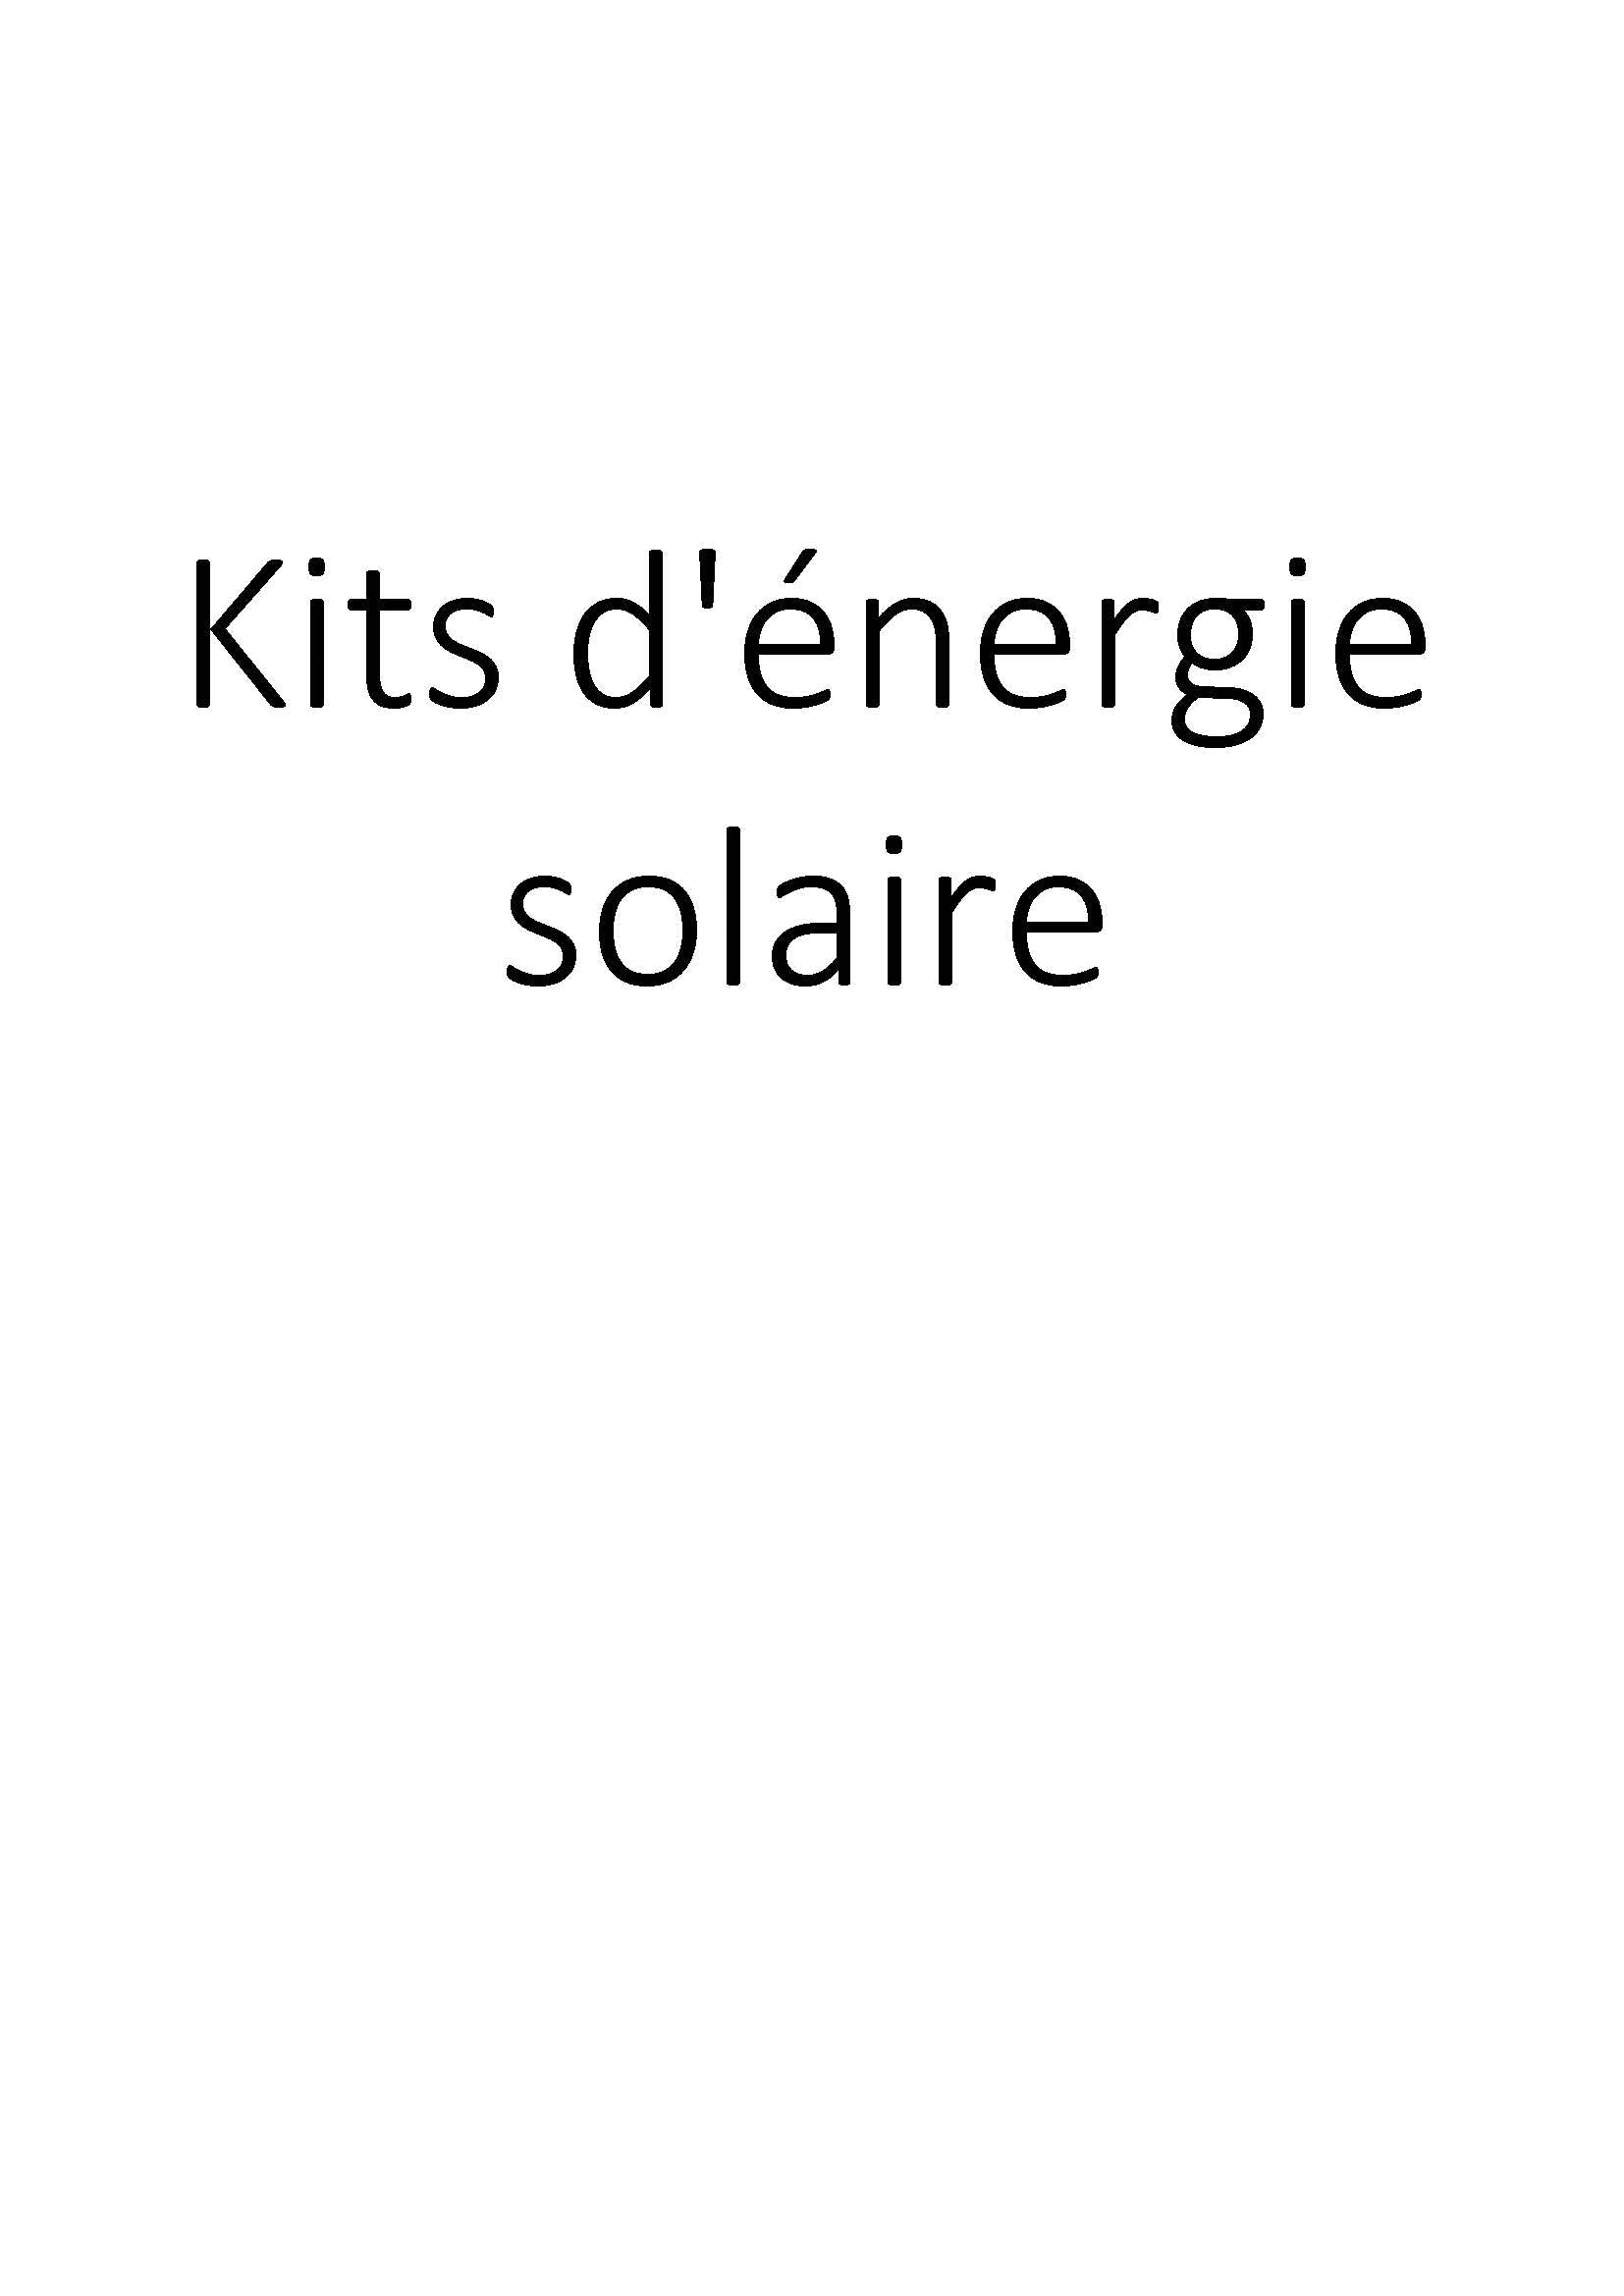 Kits d'énergie solaire clicktofournisseur.com